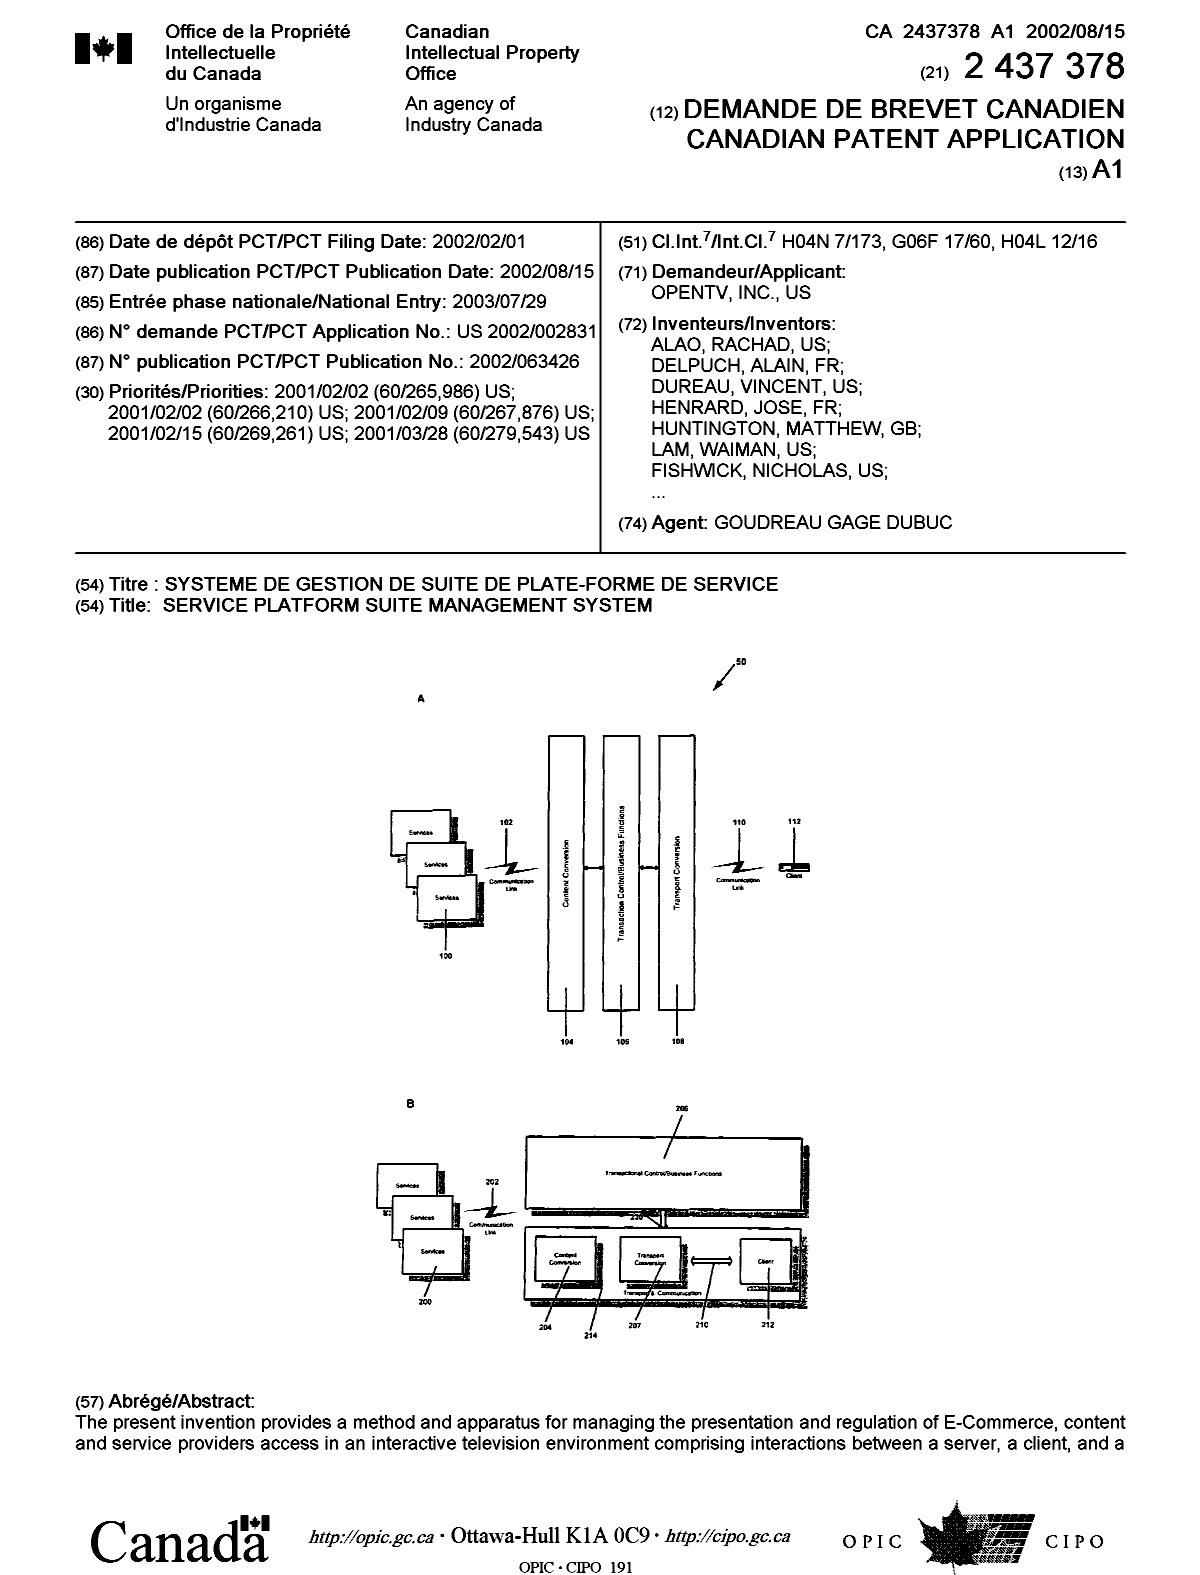 Document de brevet canadien 2437378. Page couverture 20021230. Image 1 de 2